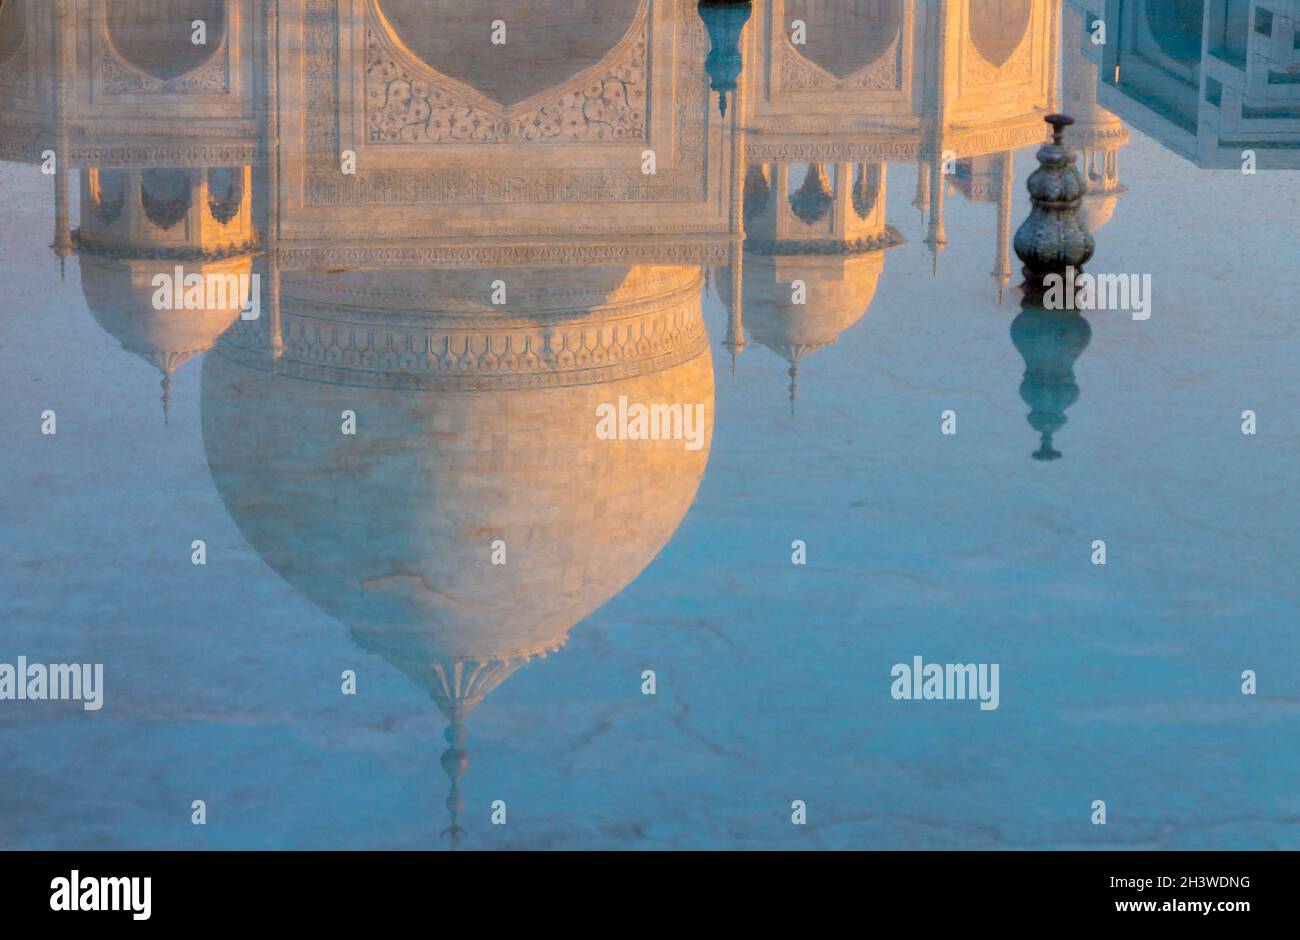 Reflection of the Taj Mahal Stock Photo